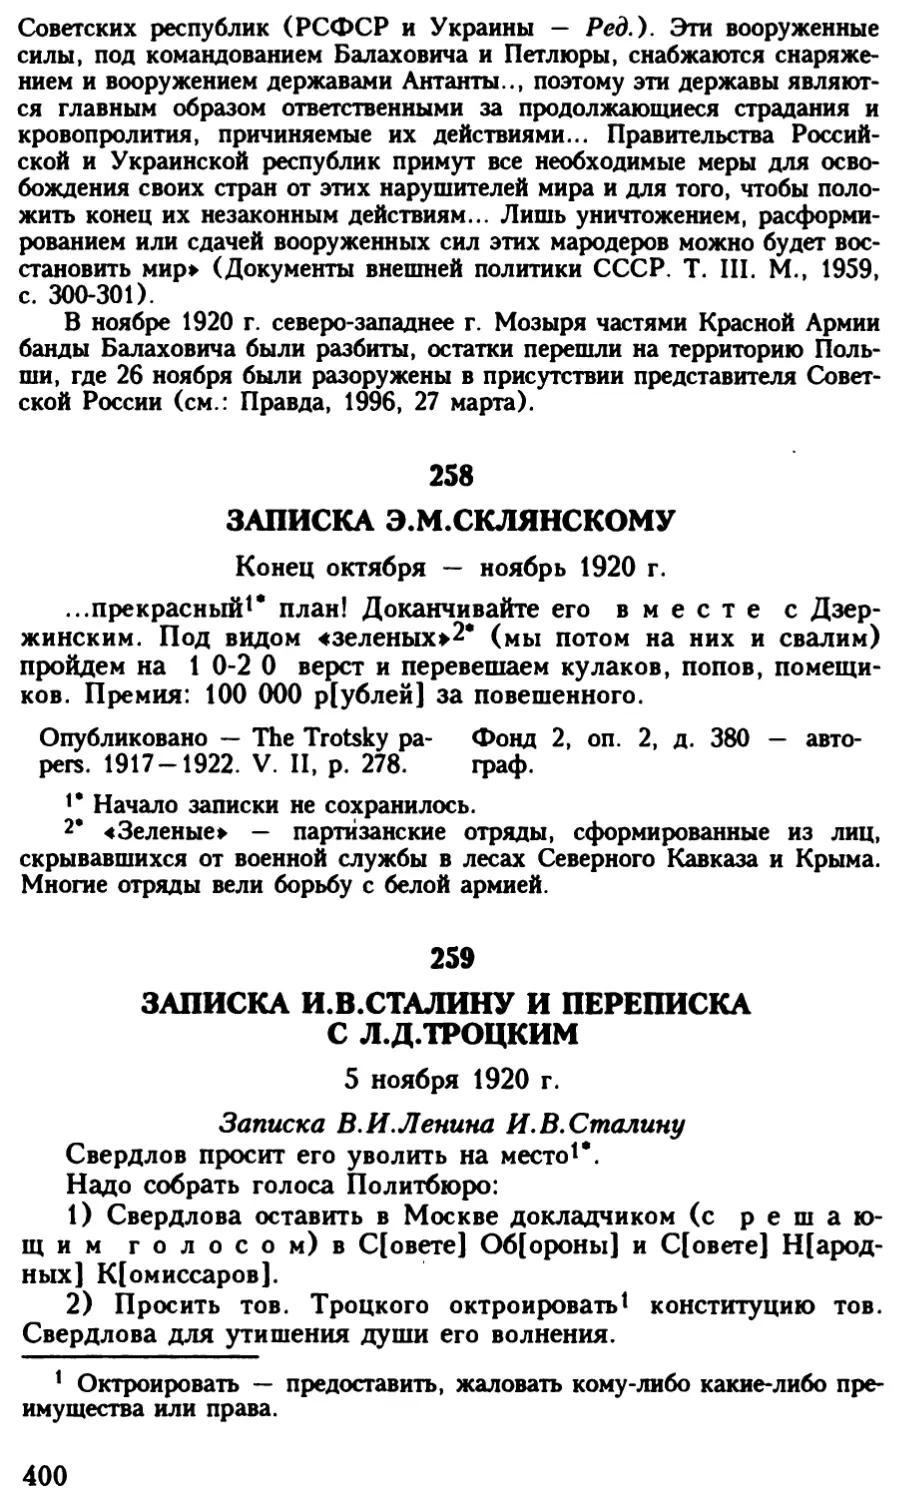 259. Записка И.В.Сталину и переписка с Л.Д.Троцким. 5 ноября 1920 г